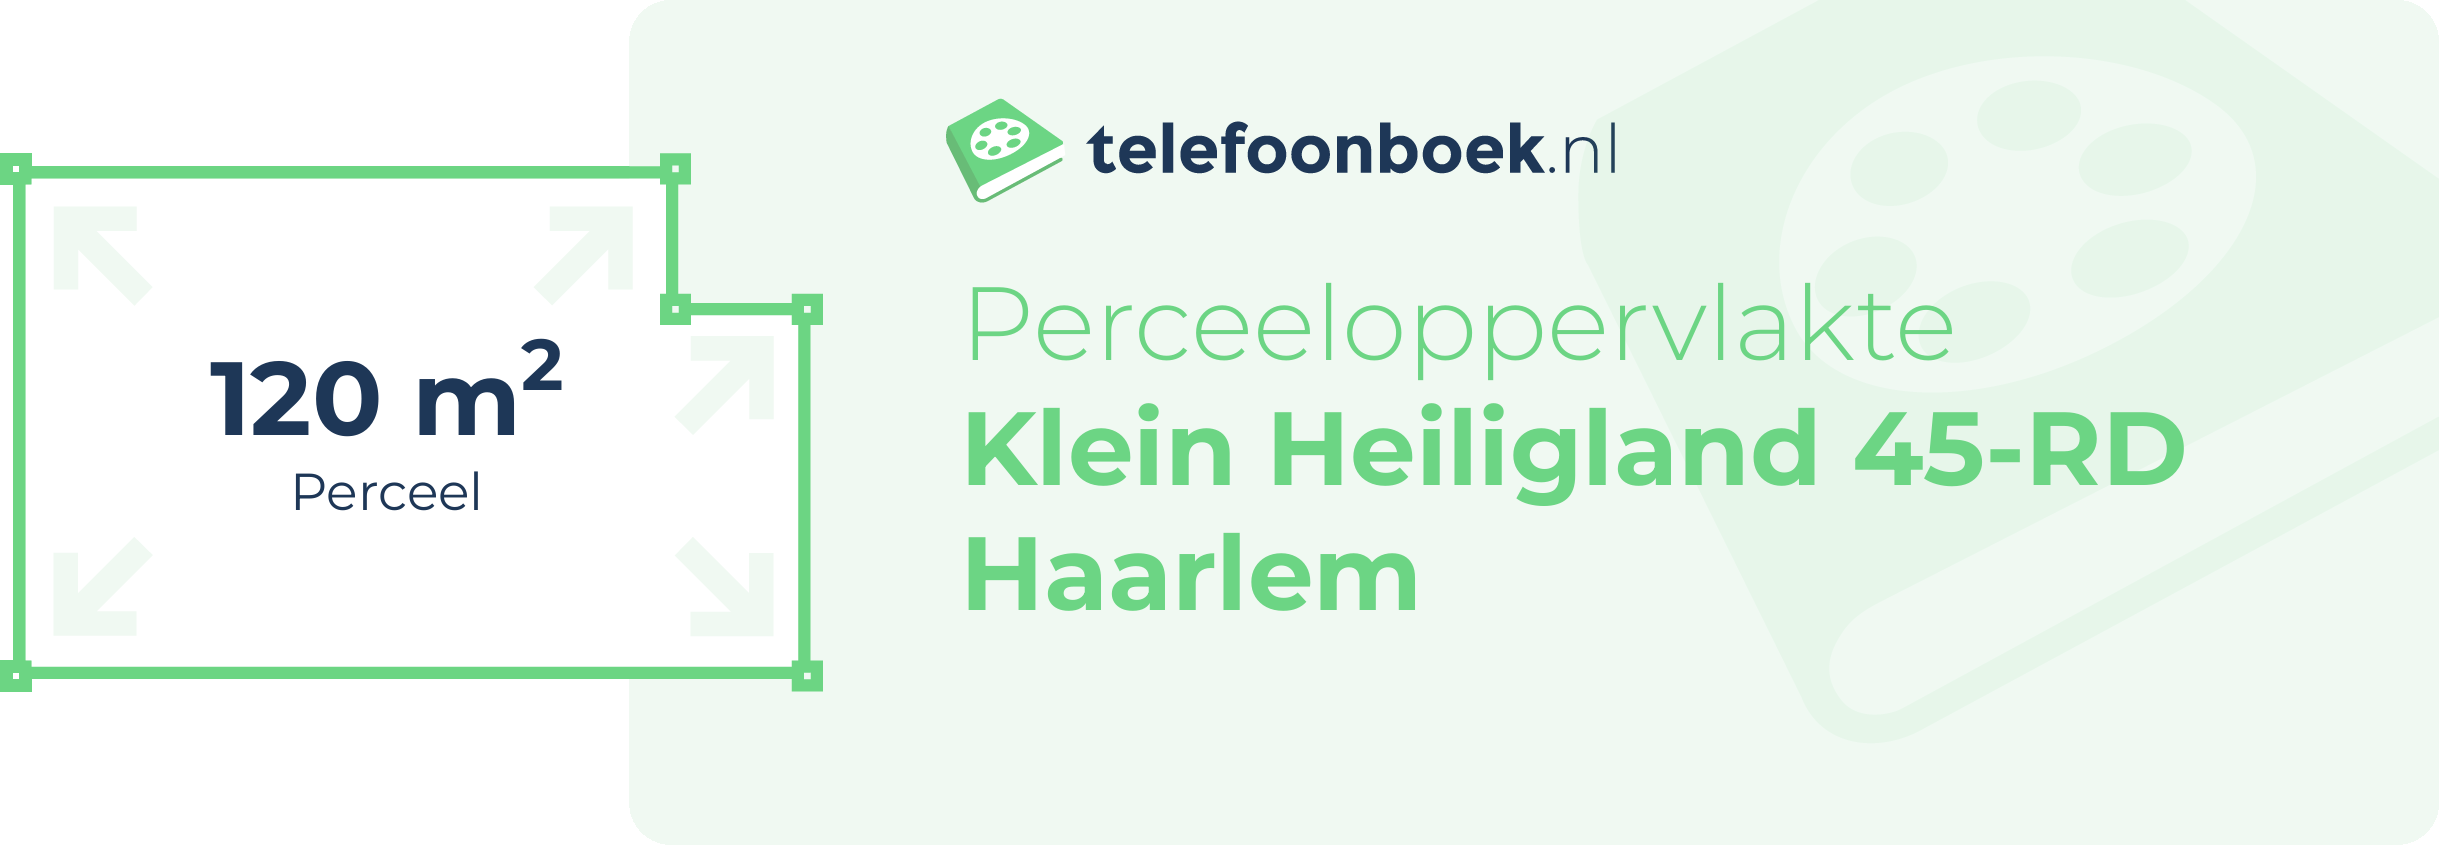 Perceeloppervlakte Klein Heiligland 45-RD Haarlem